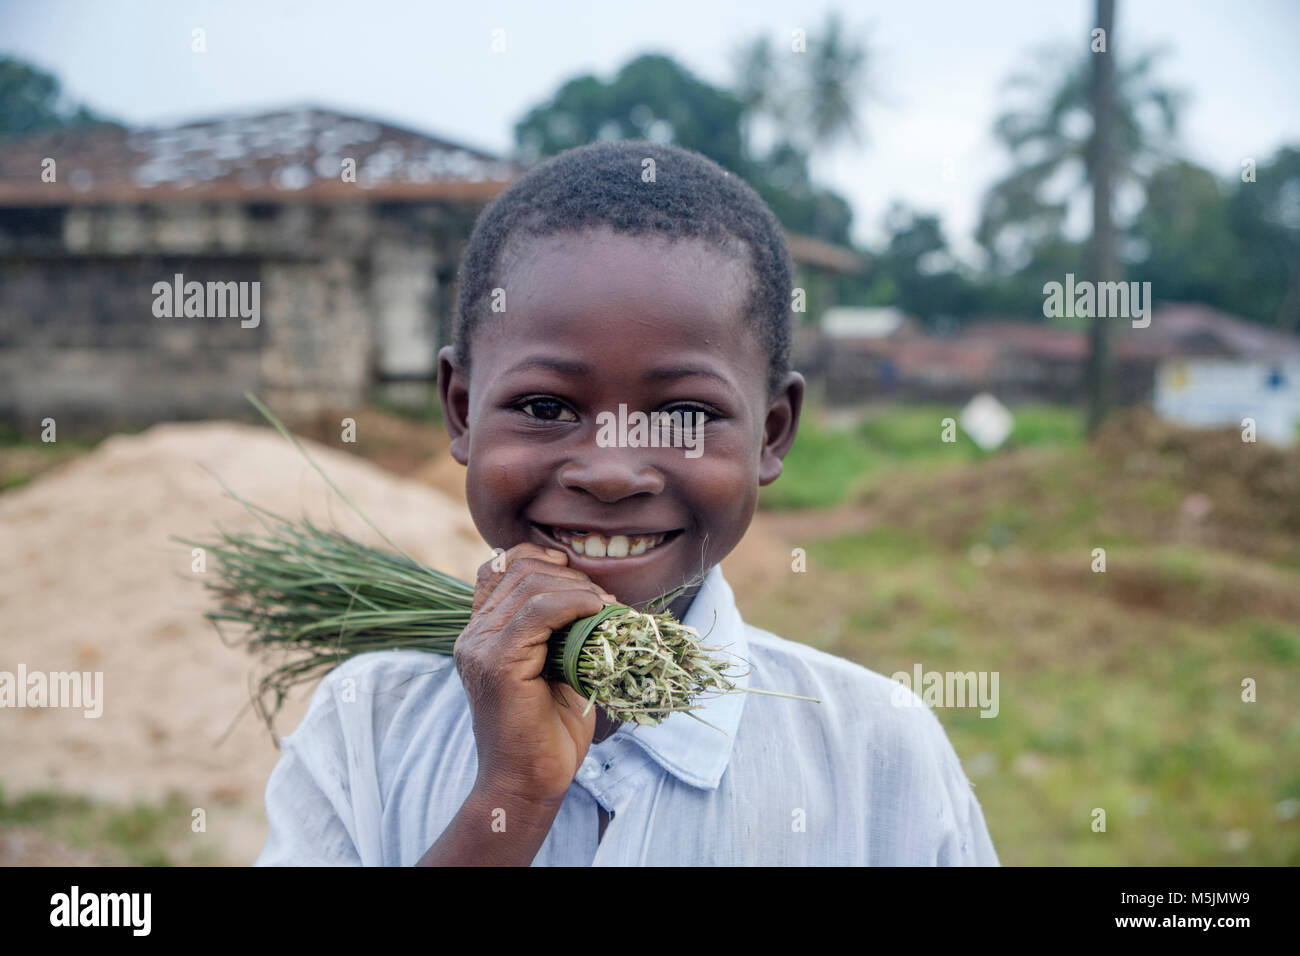 Portrait of smiling African boy from Kono village in Sierra Leone Stock Photo